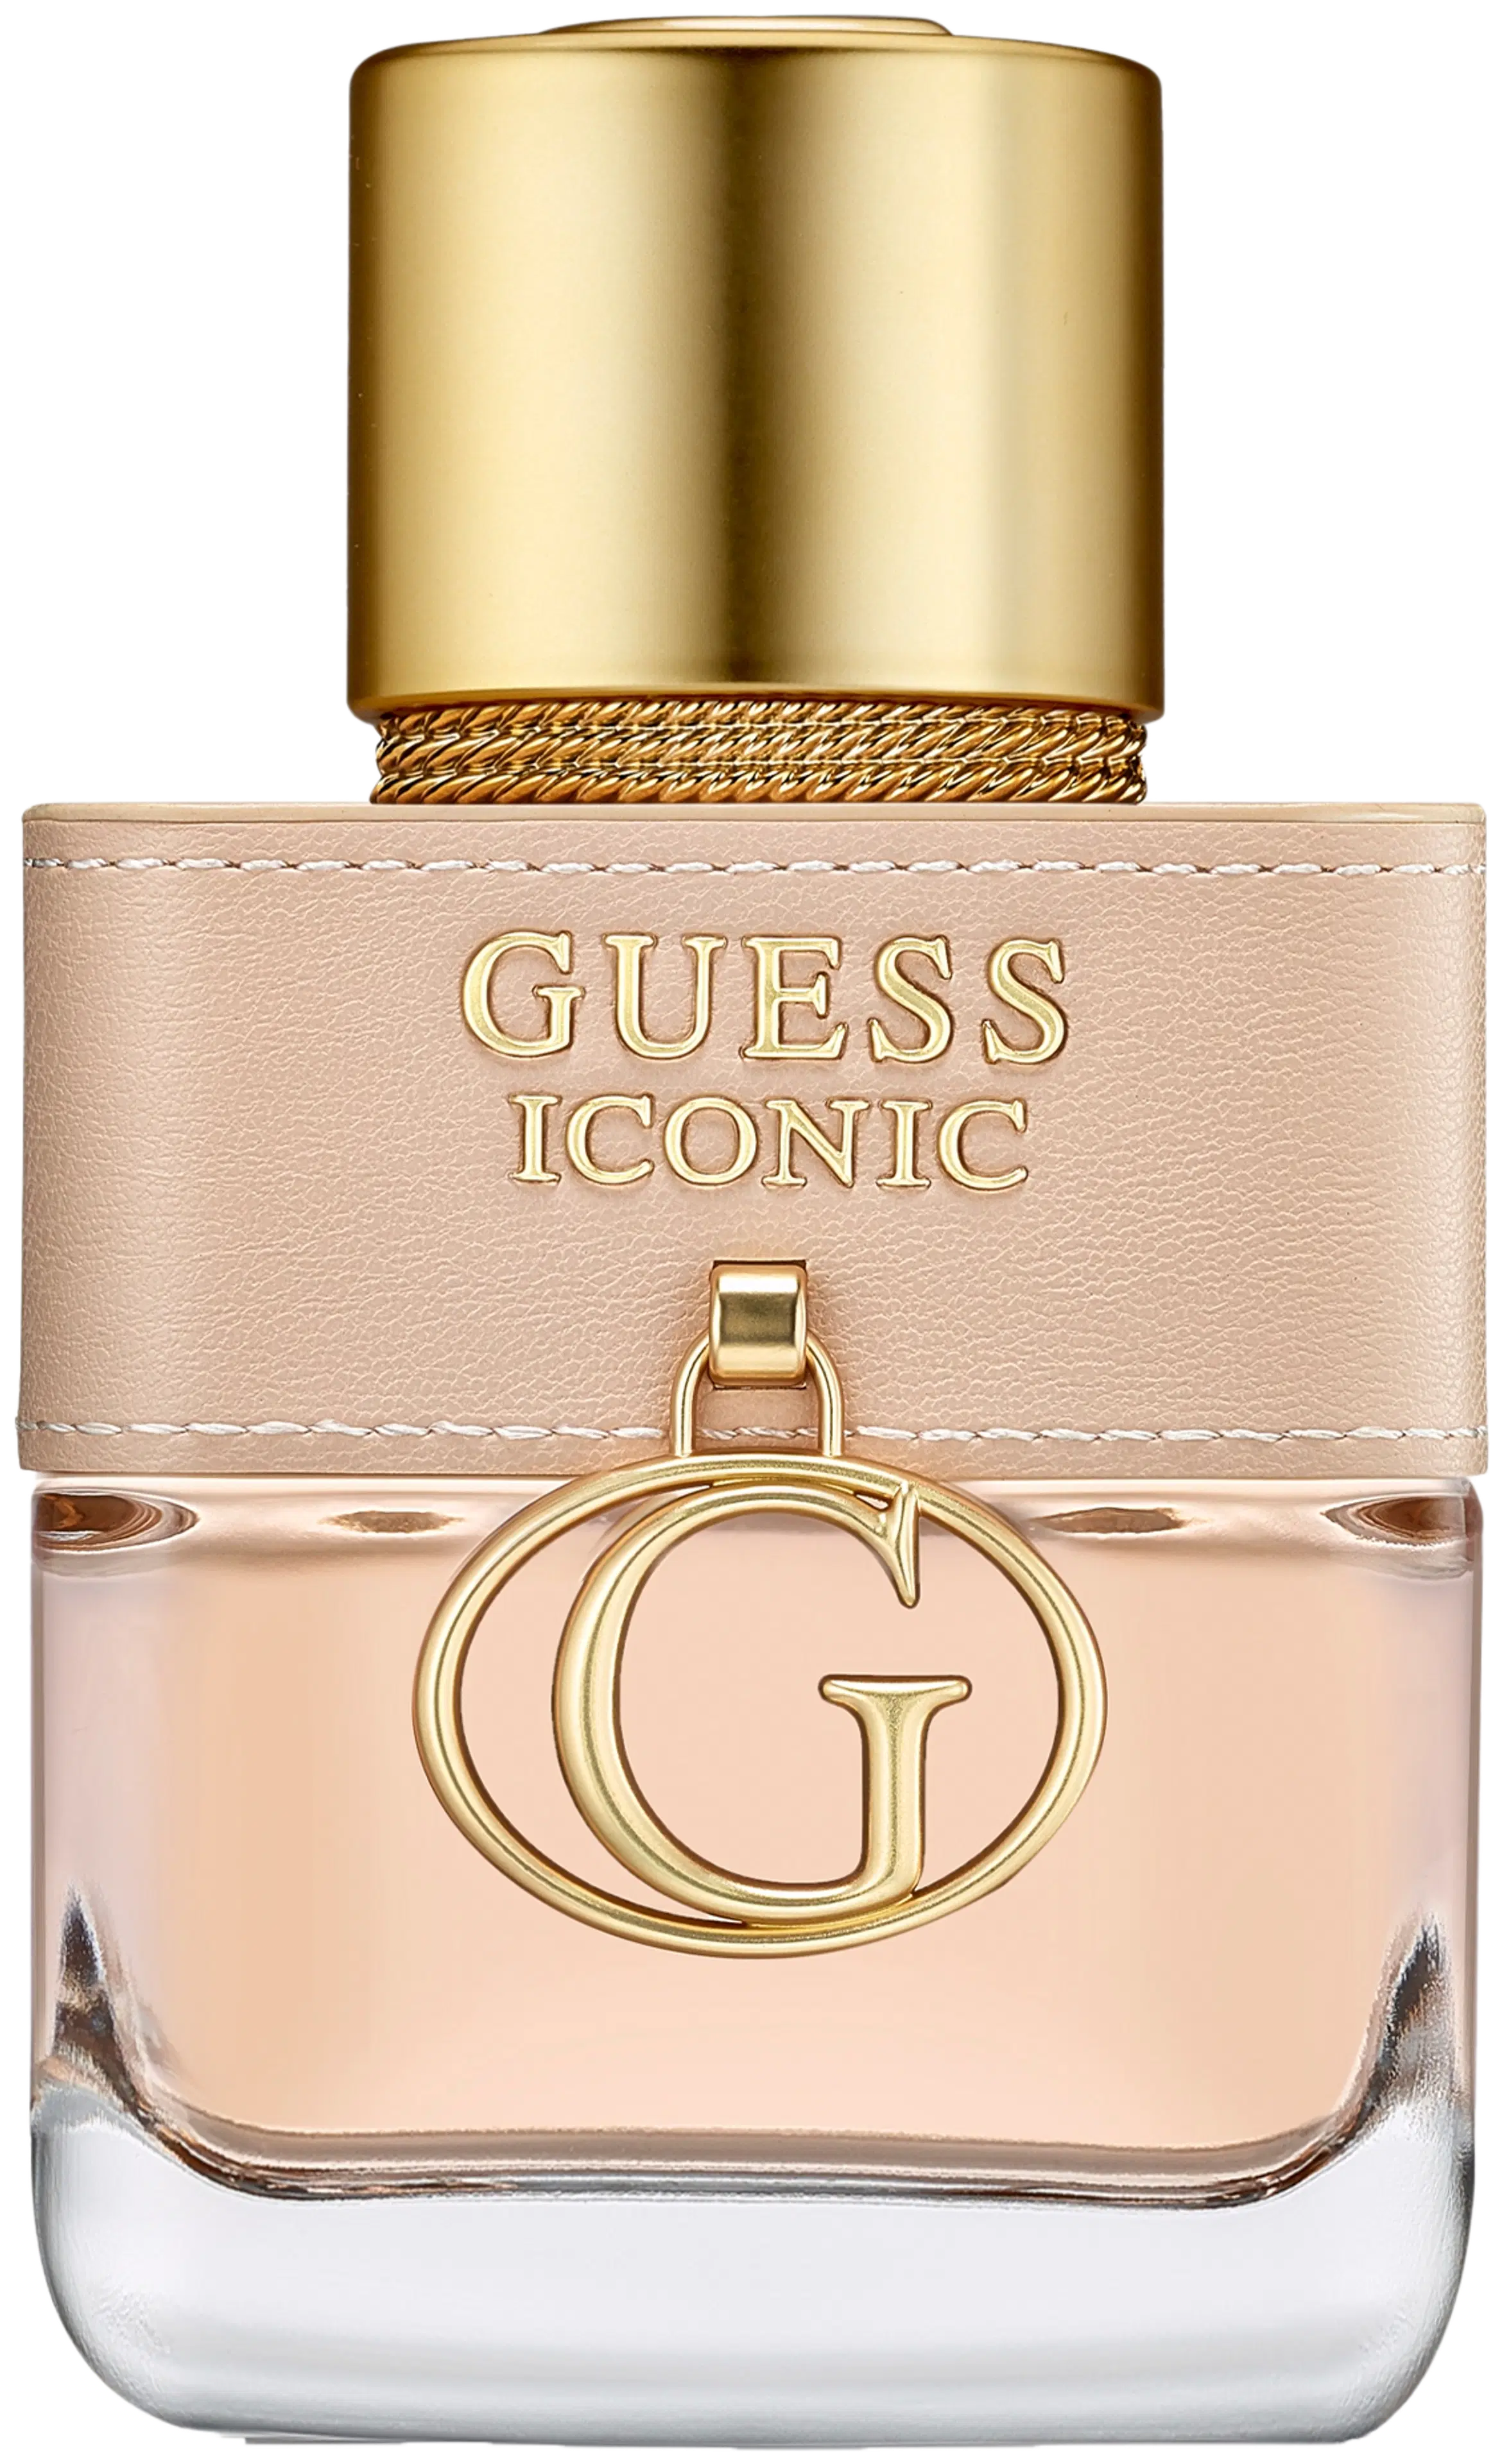 Guess Iconic for Women Eau de Parfum 30ml